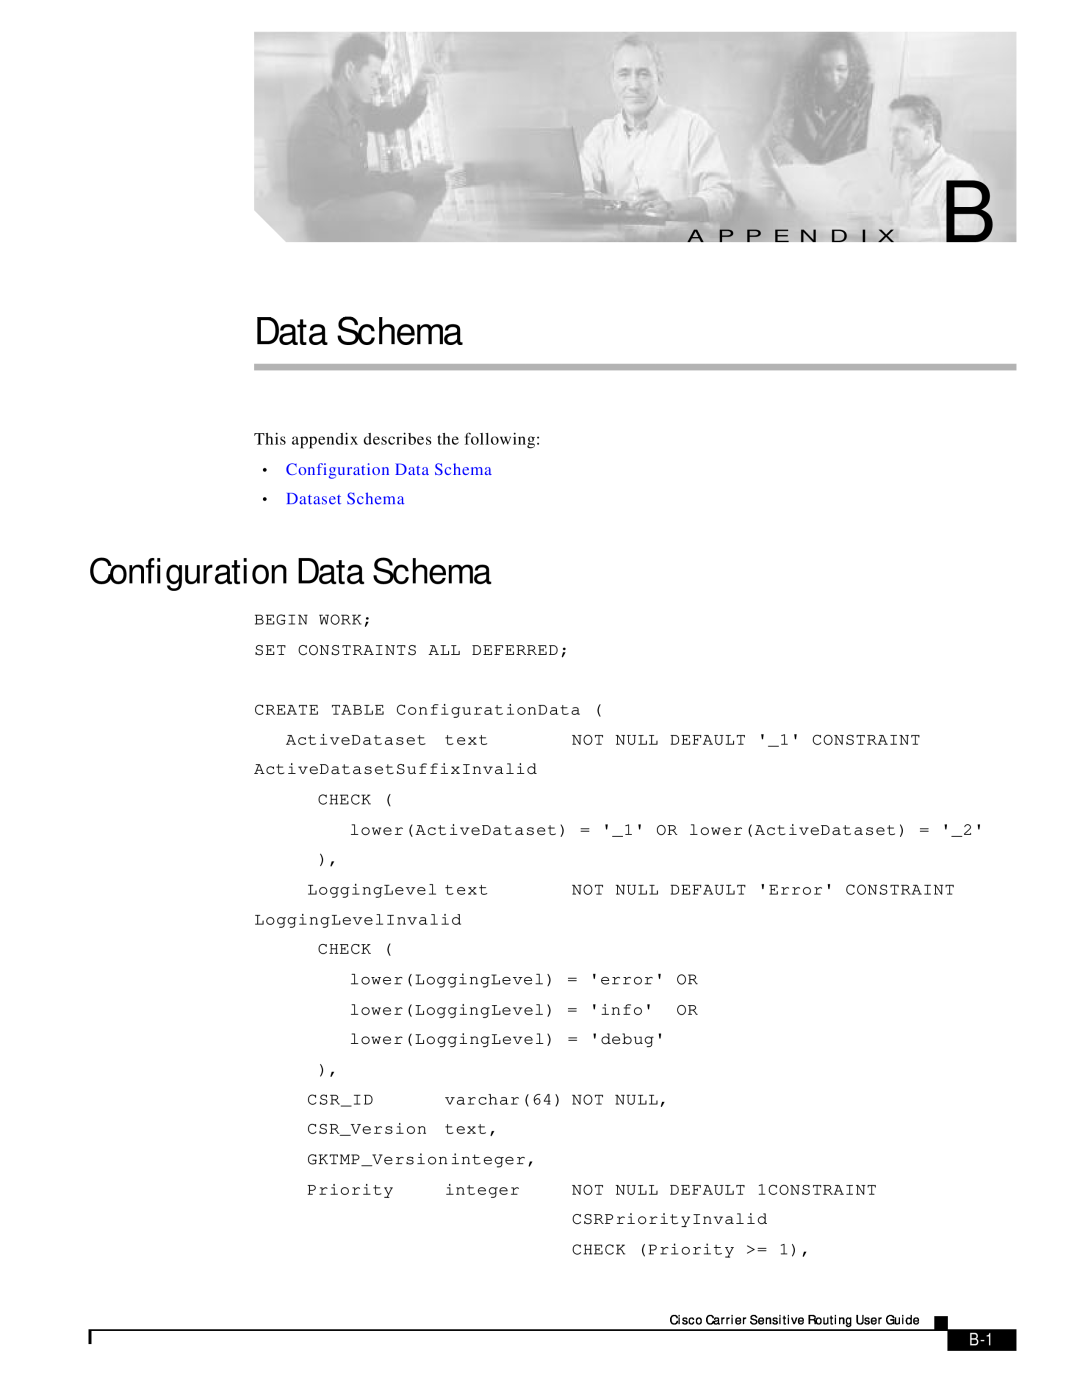 Cisco Systems Version 1.1 manual Configuration Data Schema Dataset Schema 